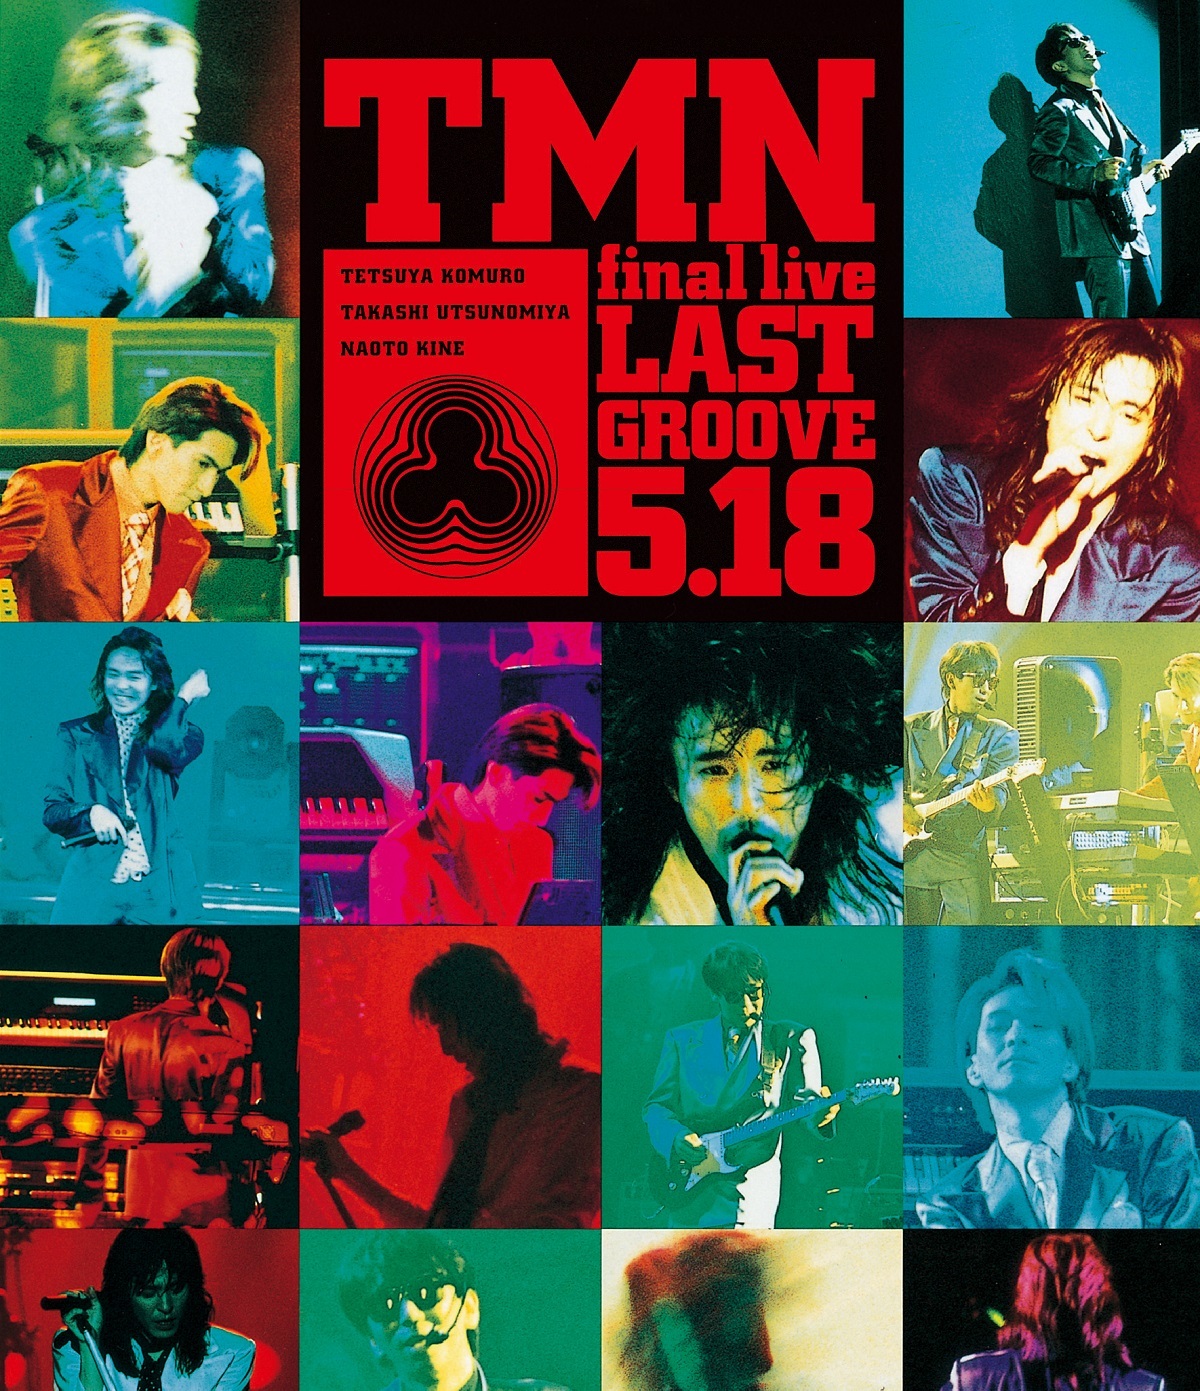 TMNライヴ・フィルム『TMN final live LAST GROOVE [5.18]』